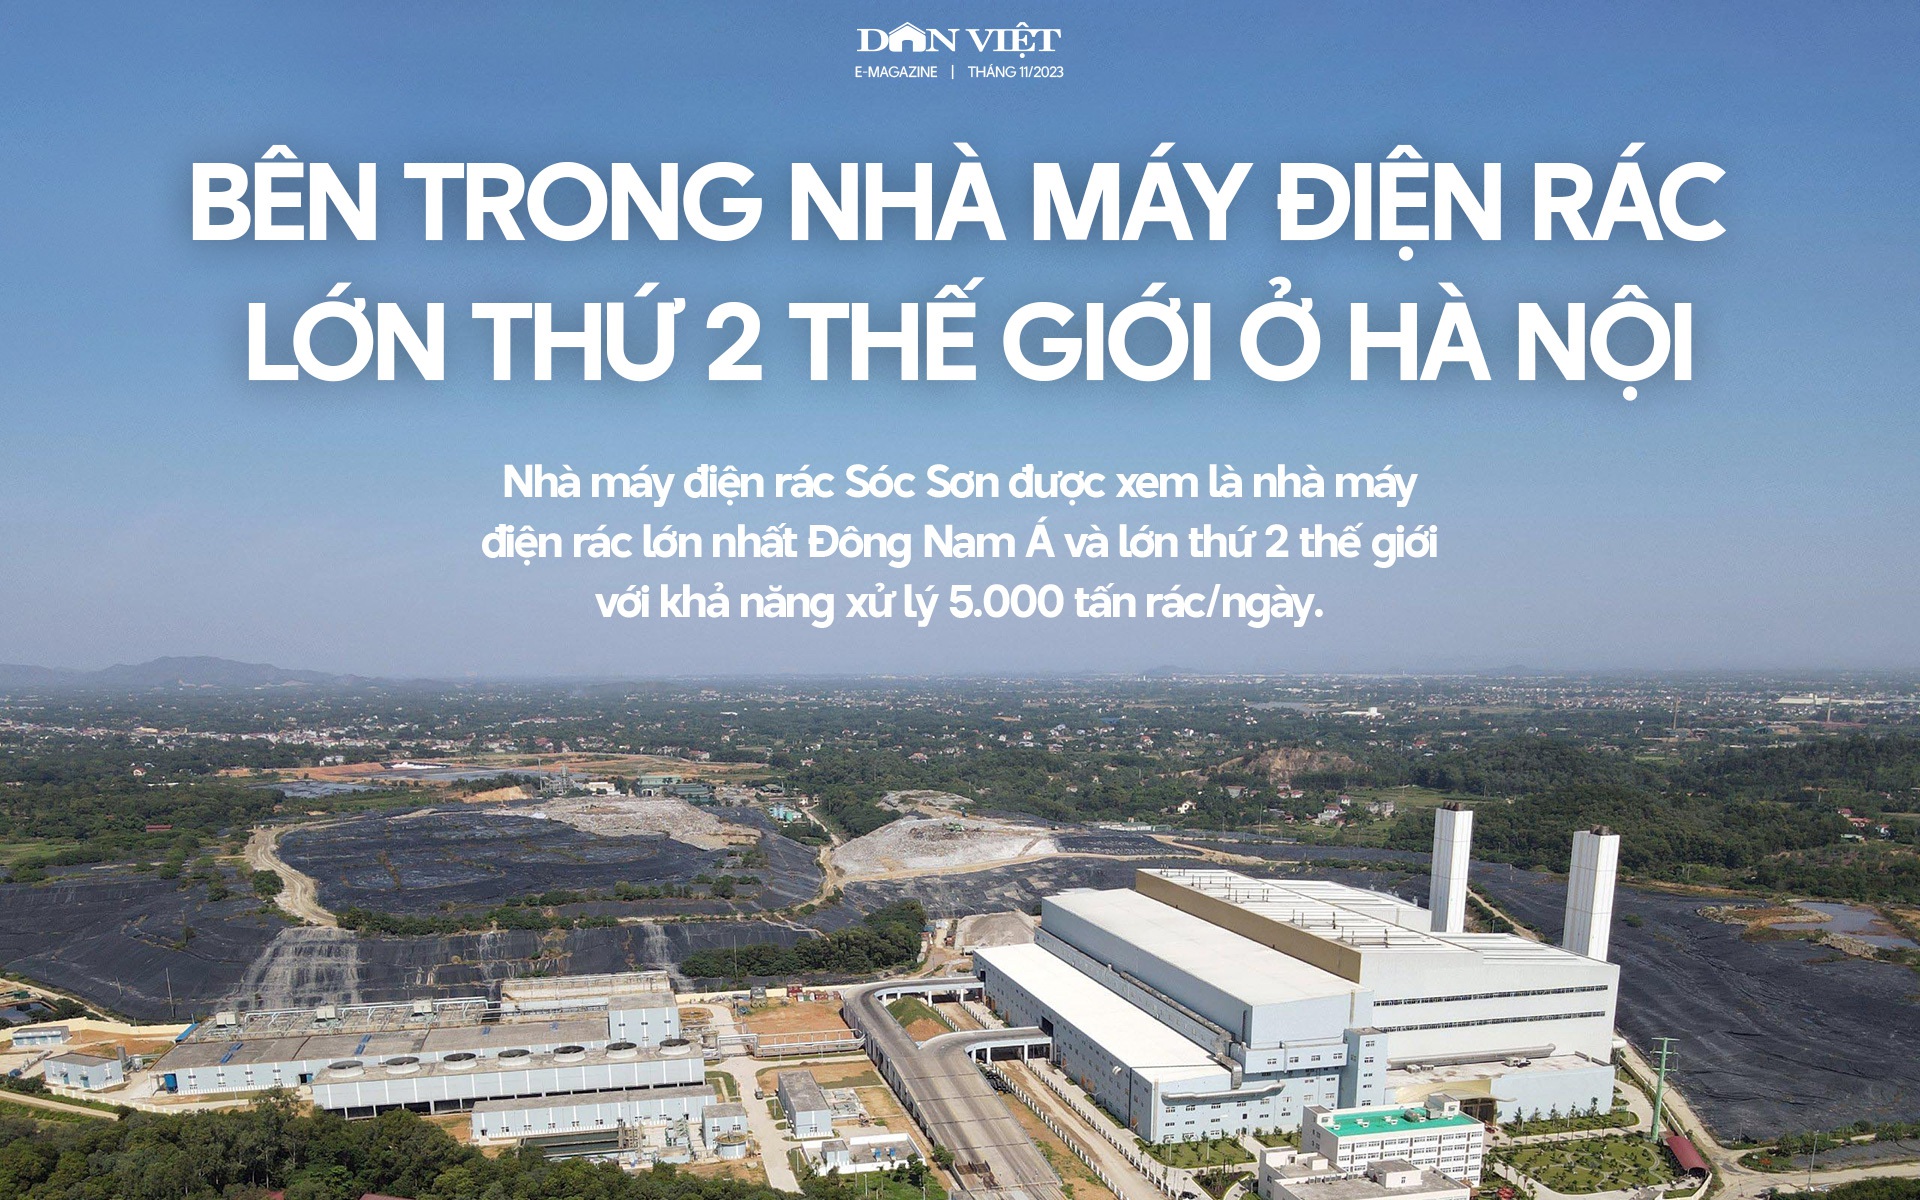 Bên trong Nhà máy điện rác lớn thứ 2 thế giới ở Hà Nội